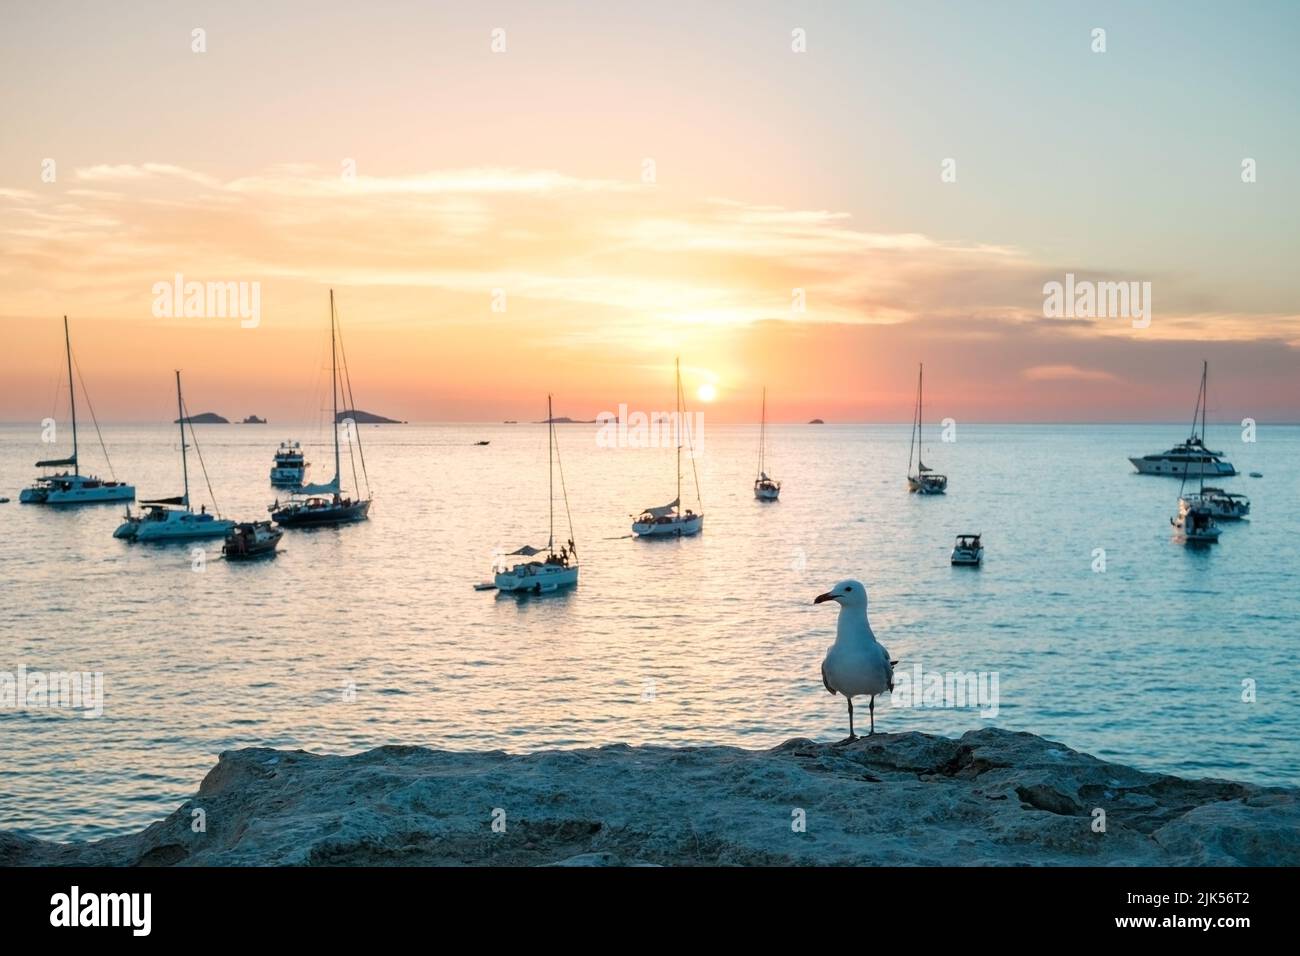 Mouette perchée sur une falaise regarde les bateaux ancrés dans la baie au coucher du soleil. Banque D'Images